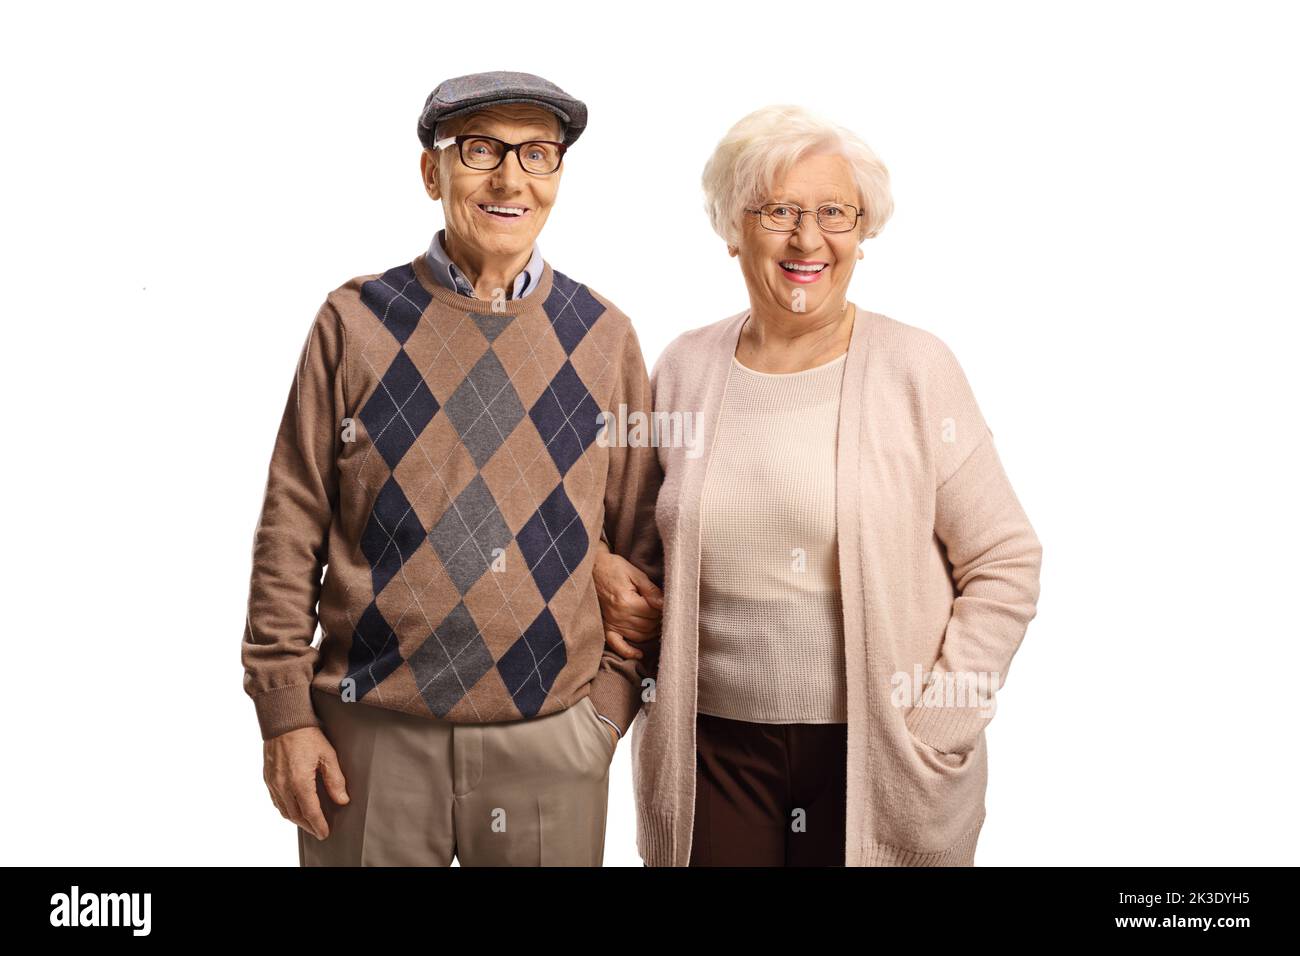 Coppia anziana sorridente che posa isolata su sfondo bianco Foto Stock